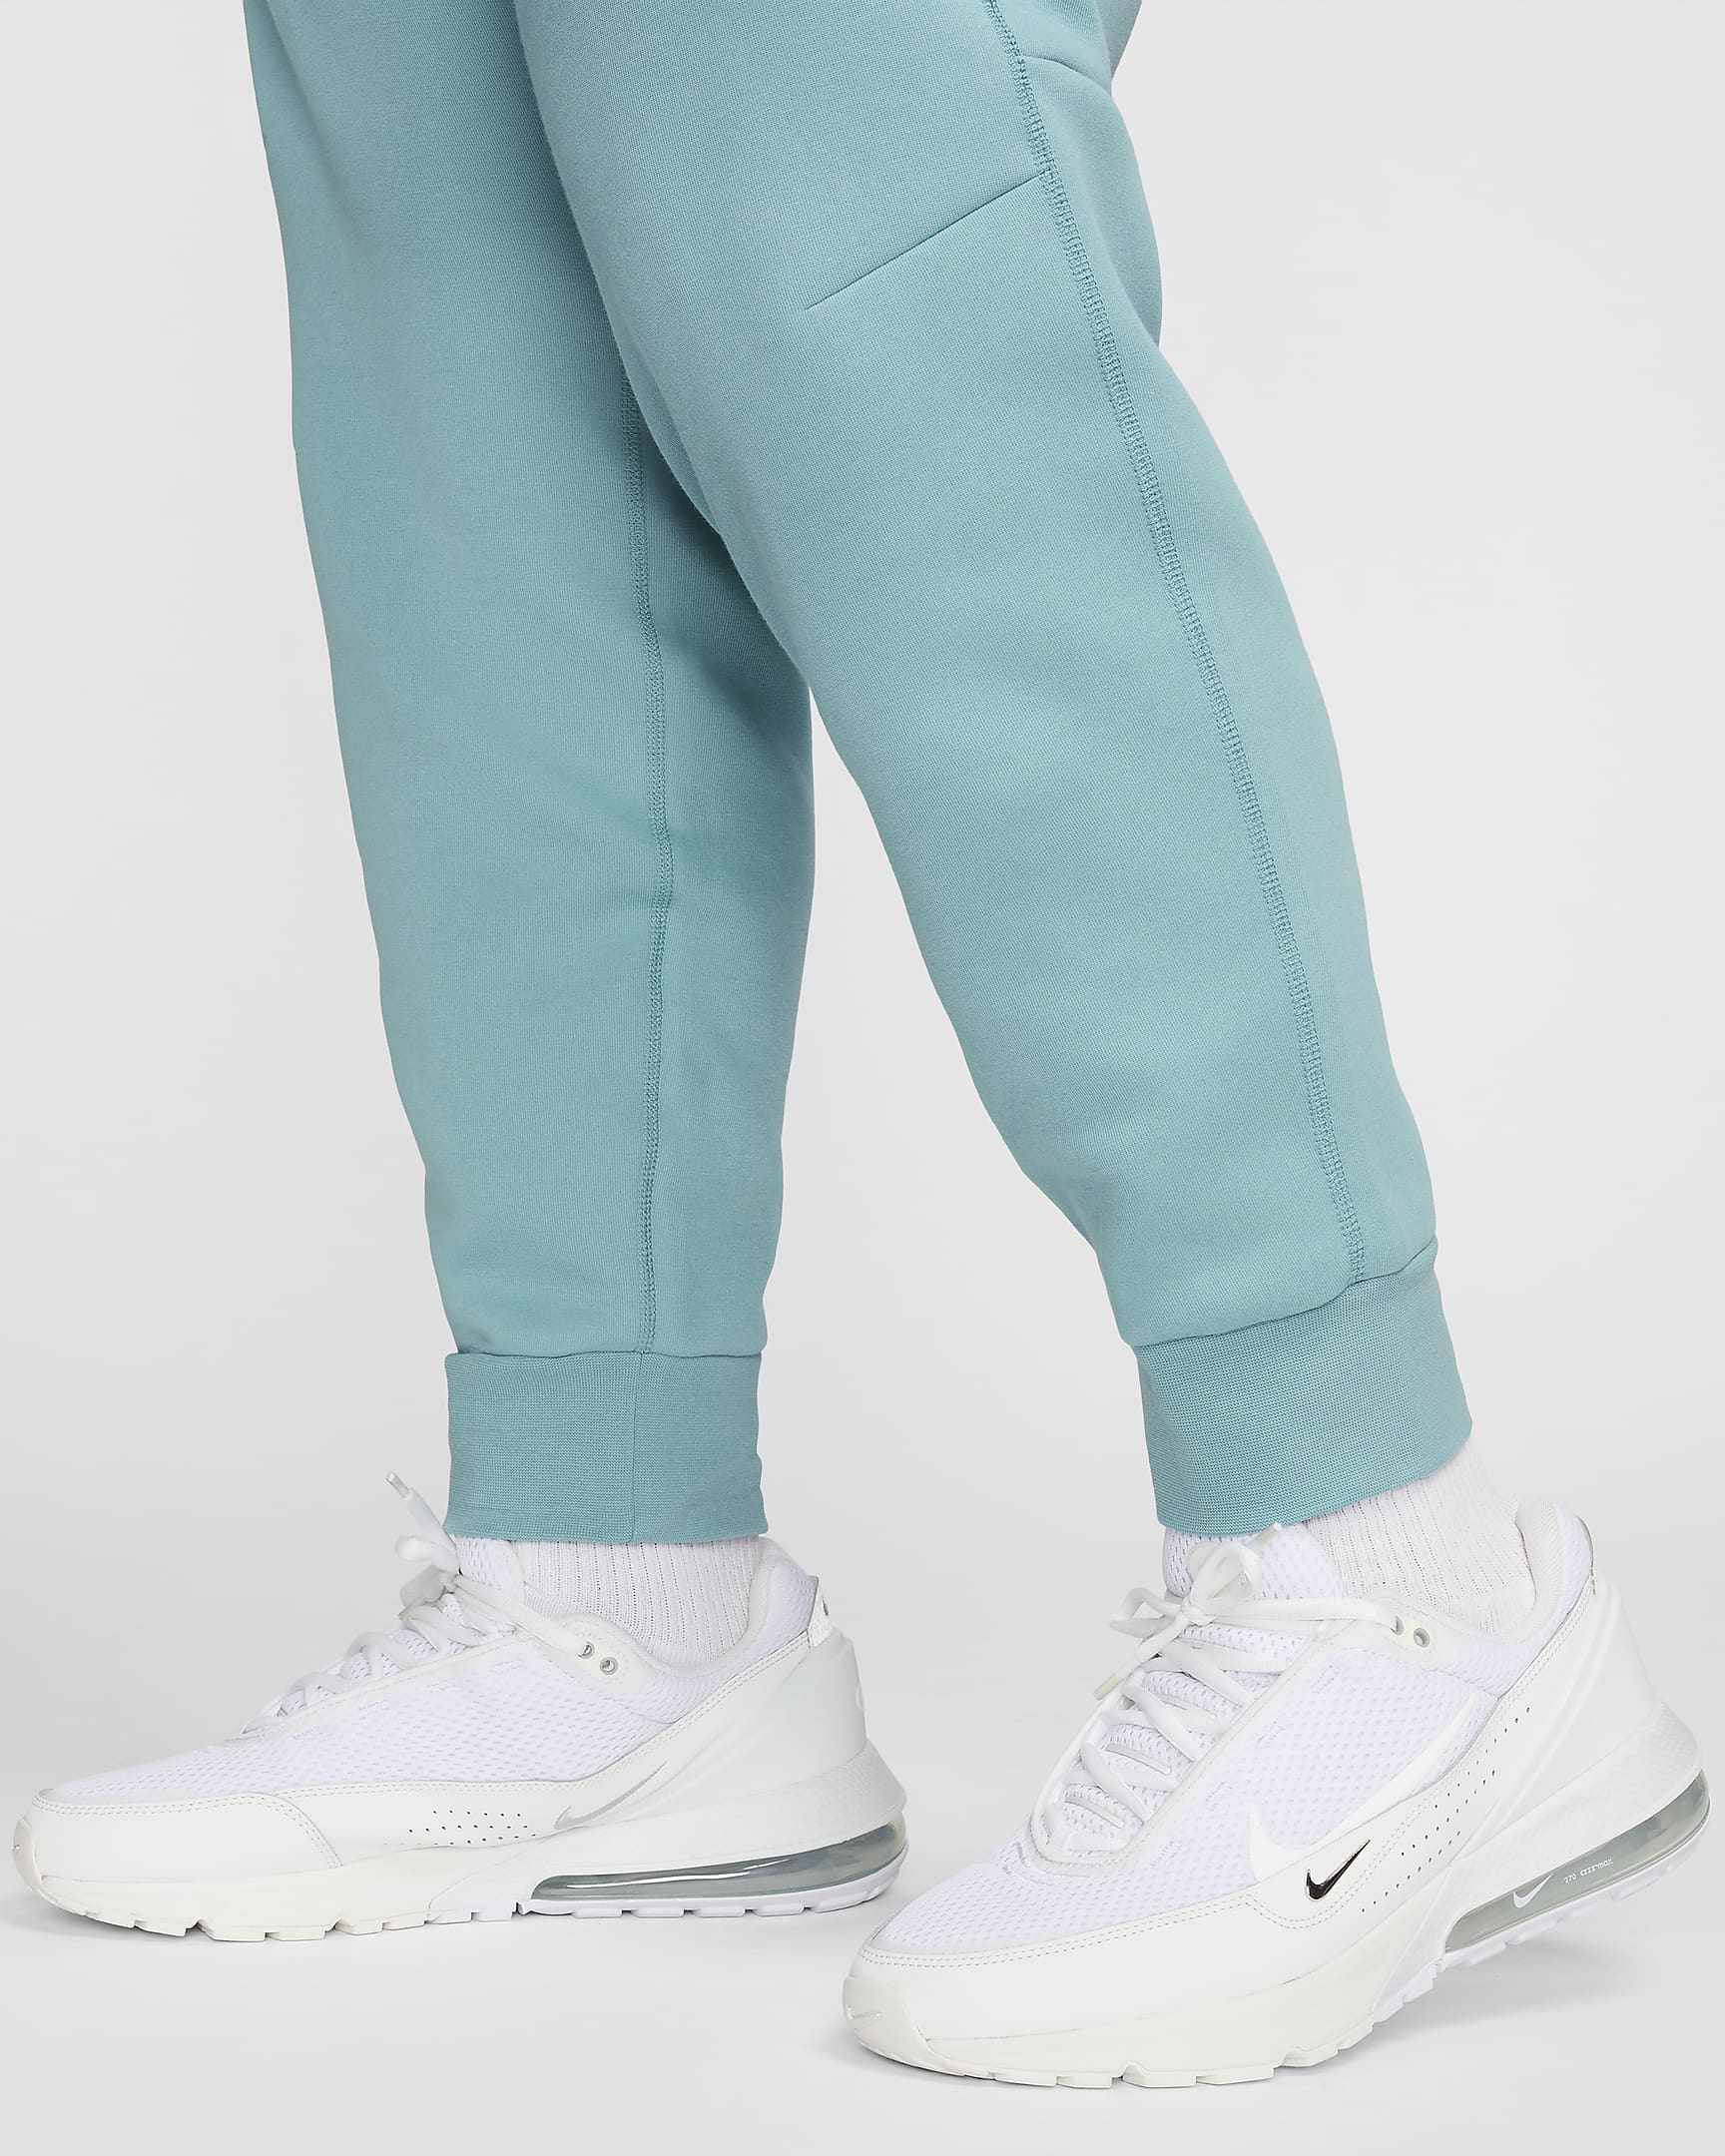 Nike Sportswear Tech Fleece Men's Joggers - Denim Turquoise/Black